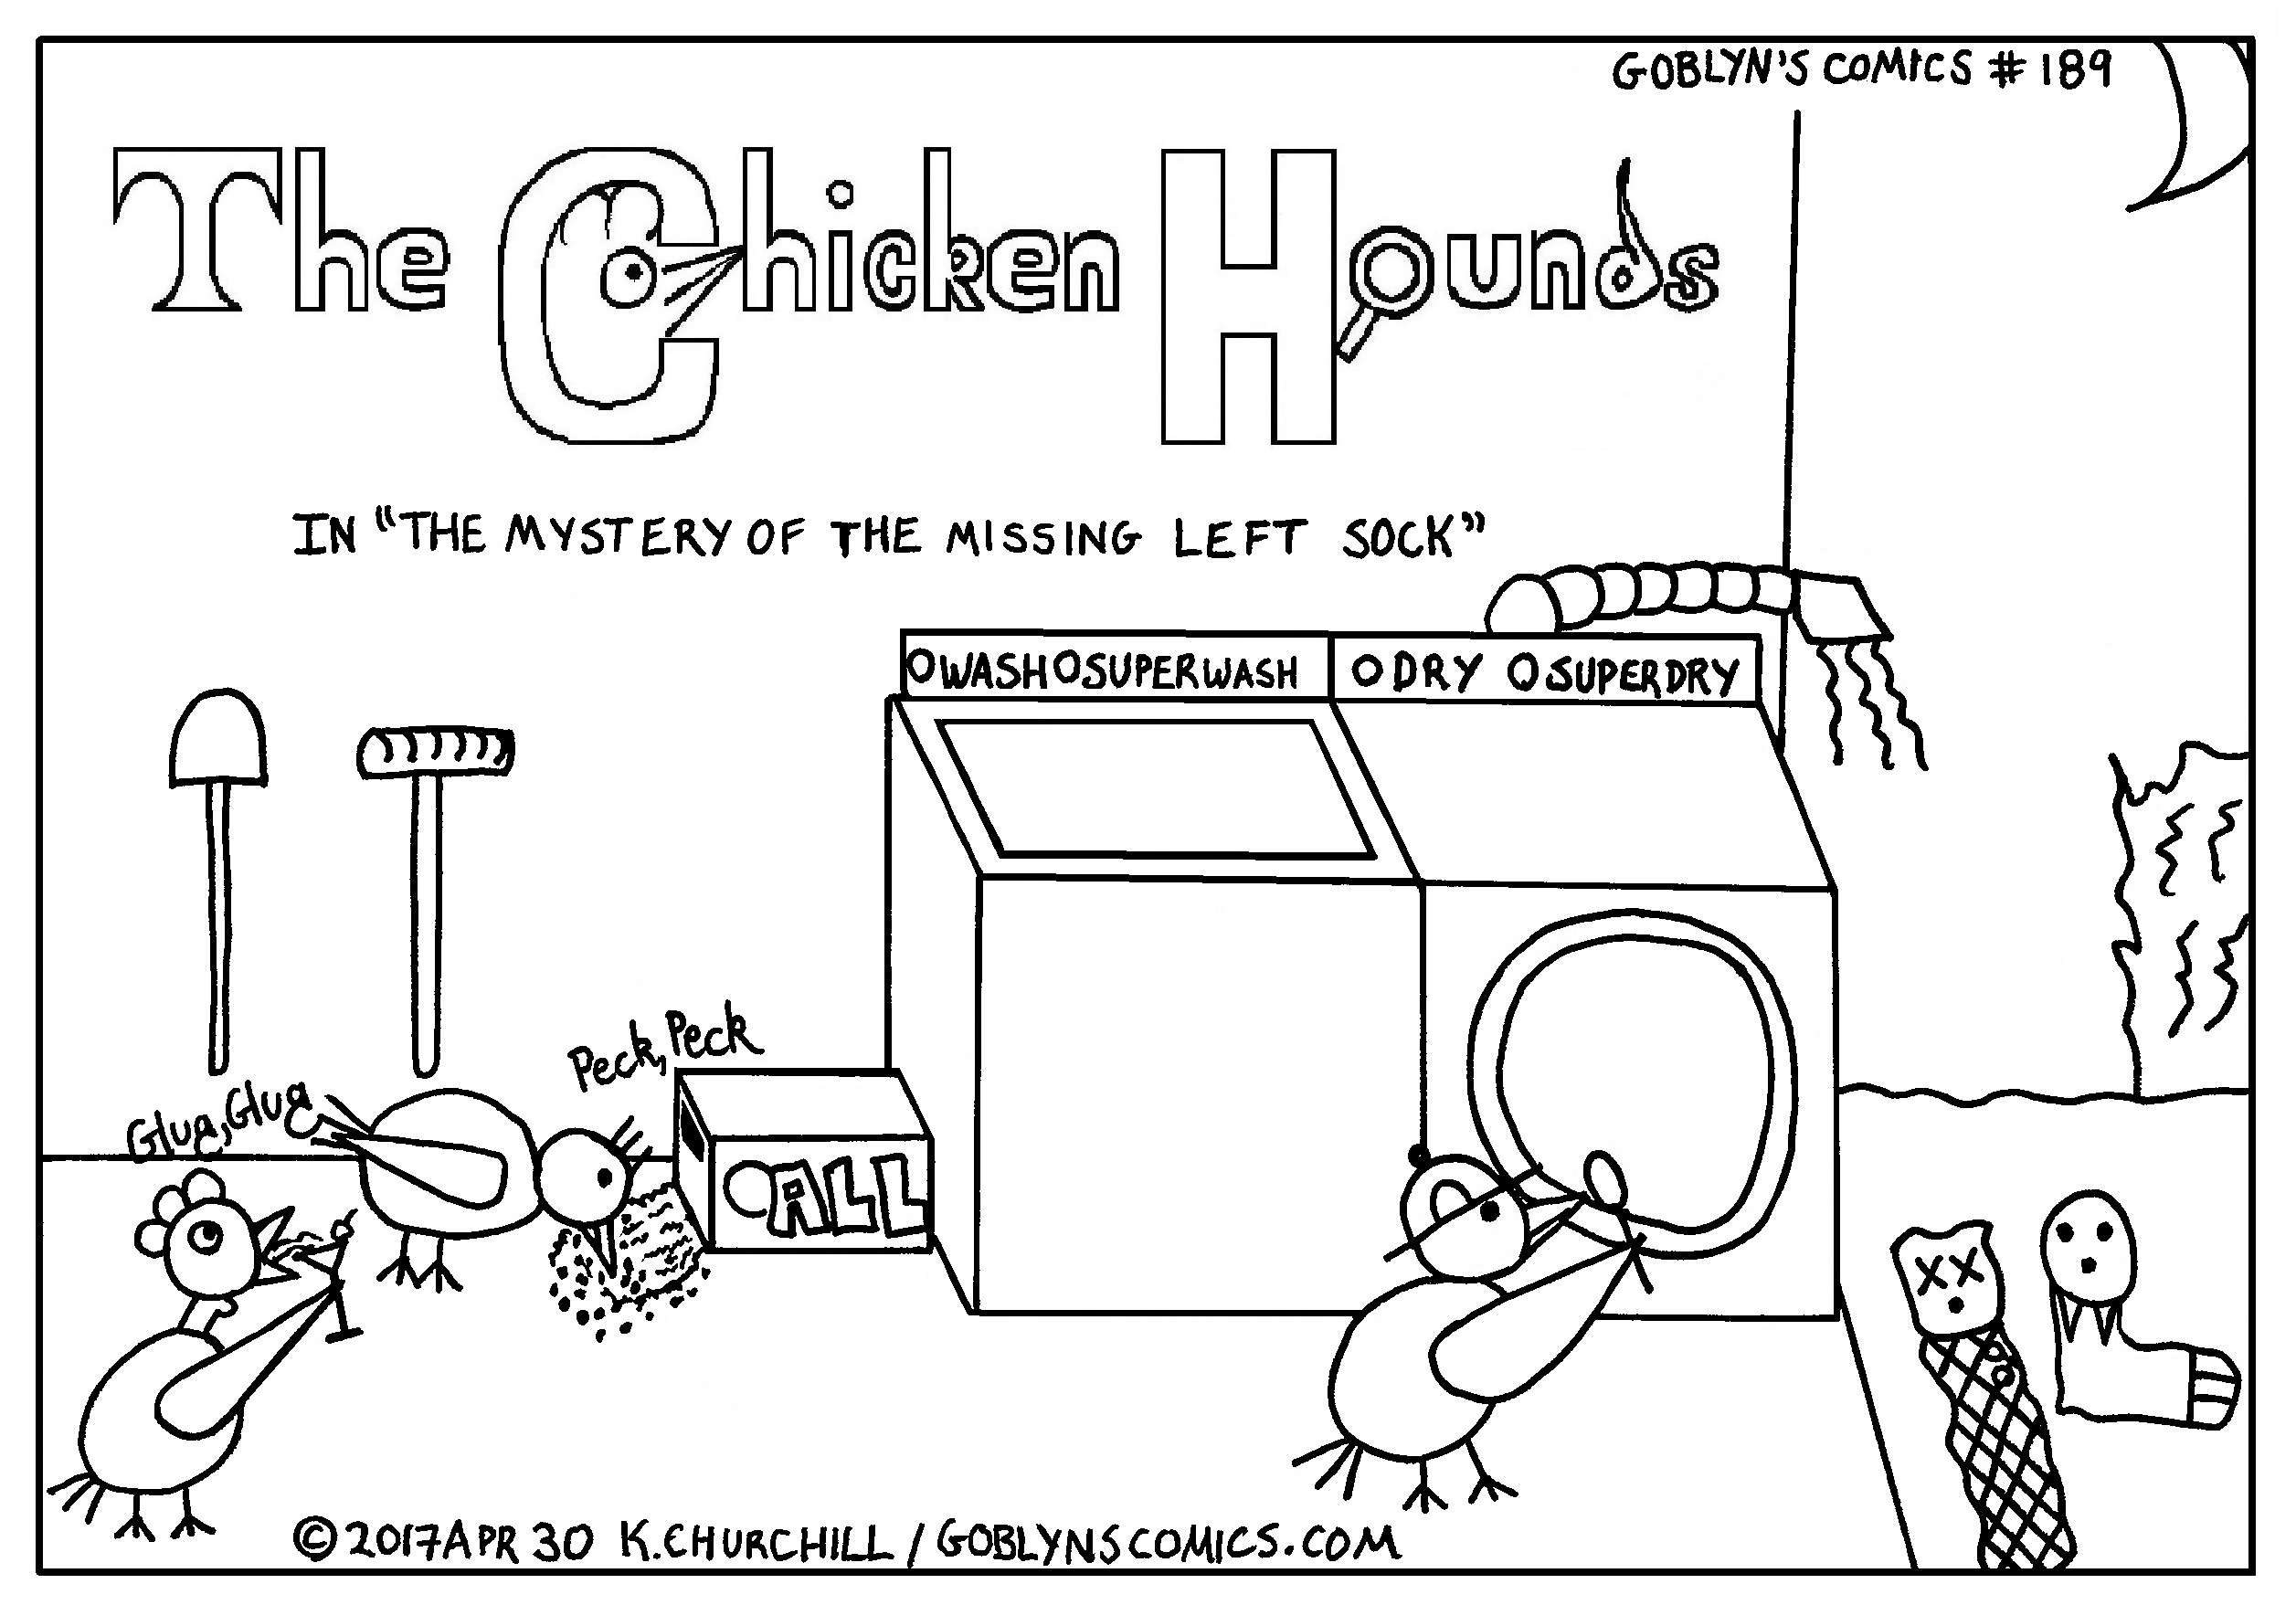 Chicken Hounds